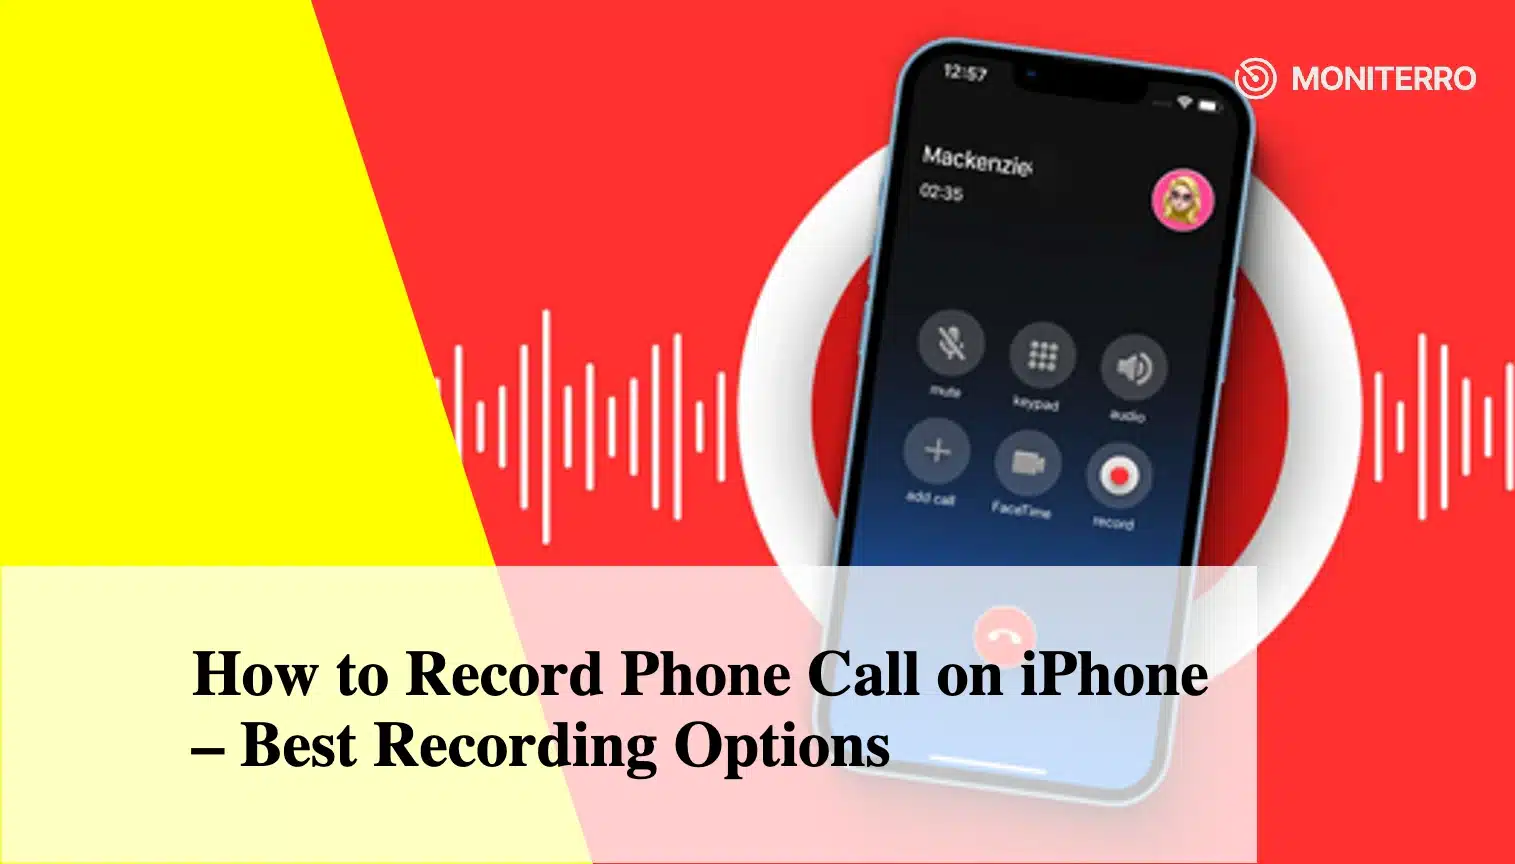 Jak nagrywać rozmowy telefoniczne na iPhonie - najlepsze opcje nagrywania